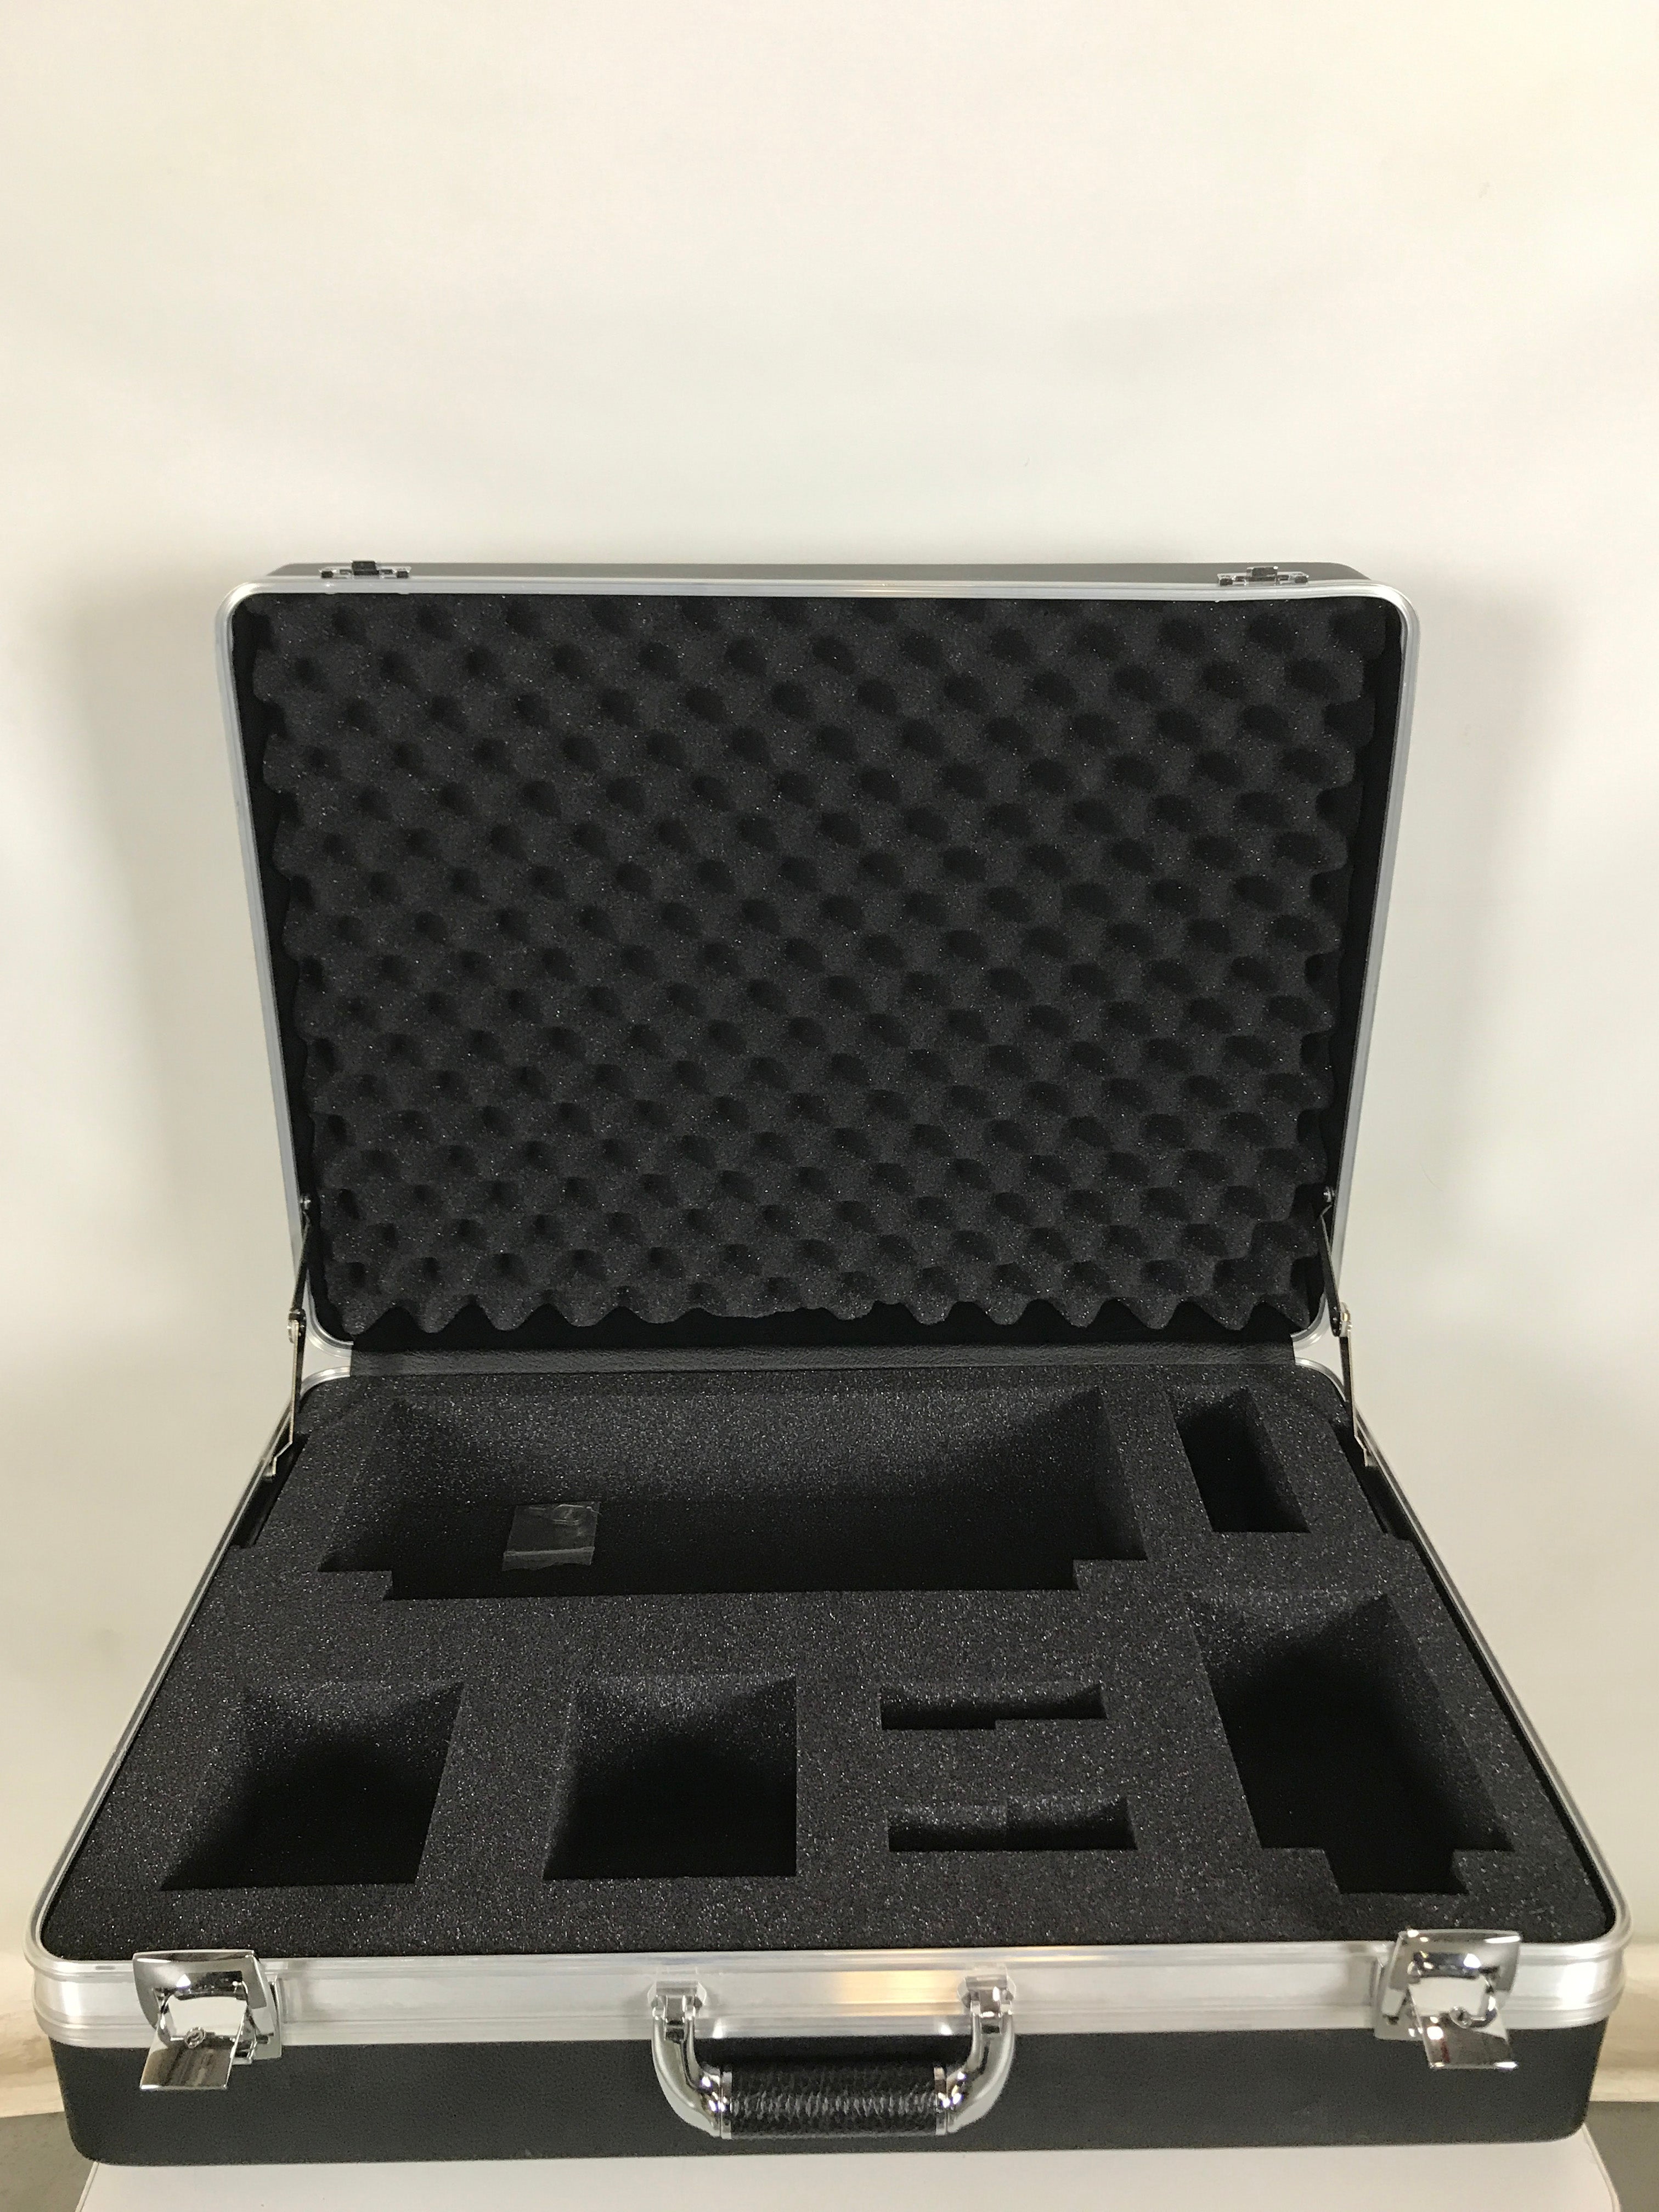 Black Plastic AV Equipment Carrying Case